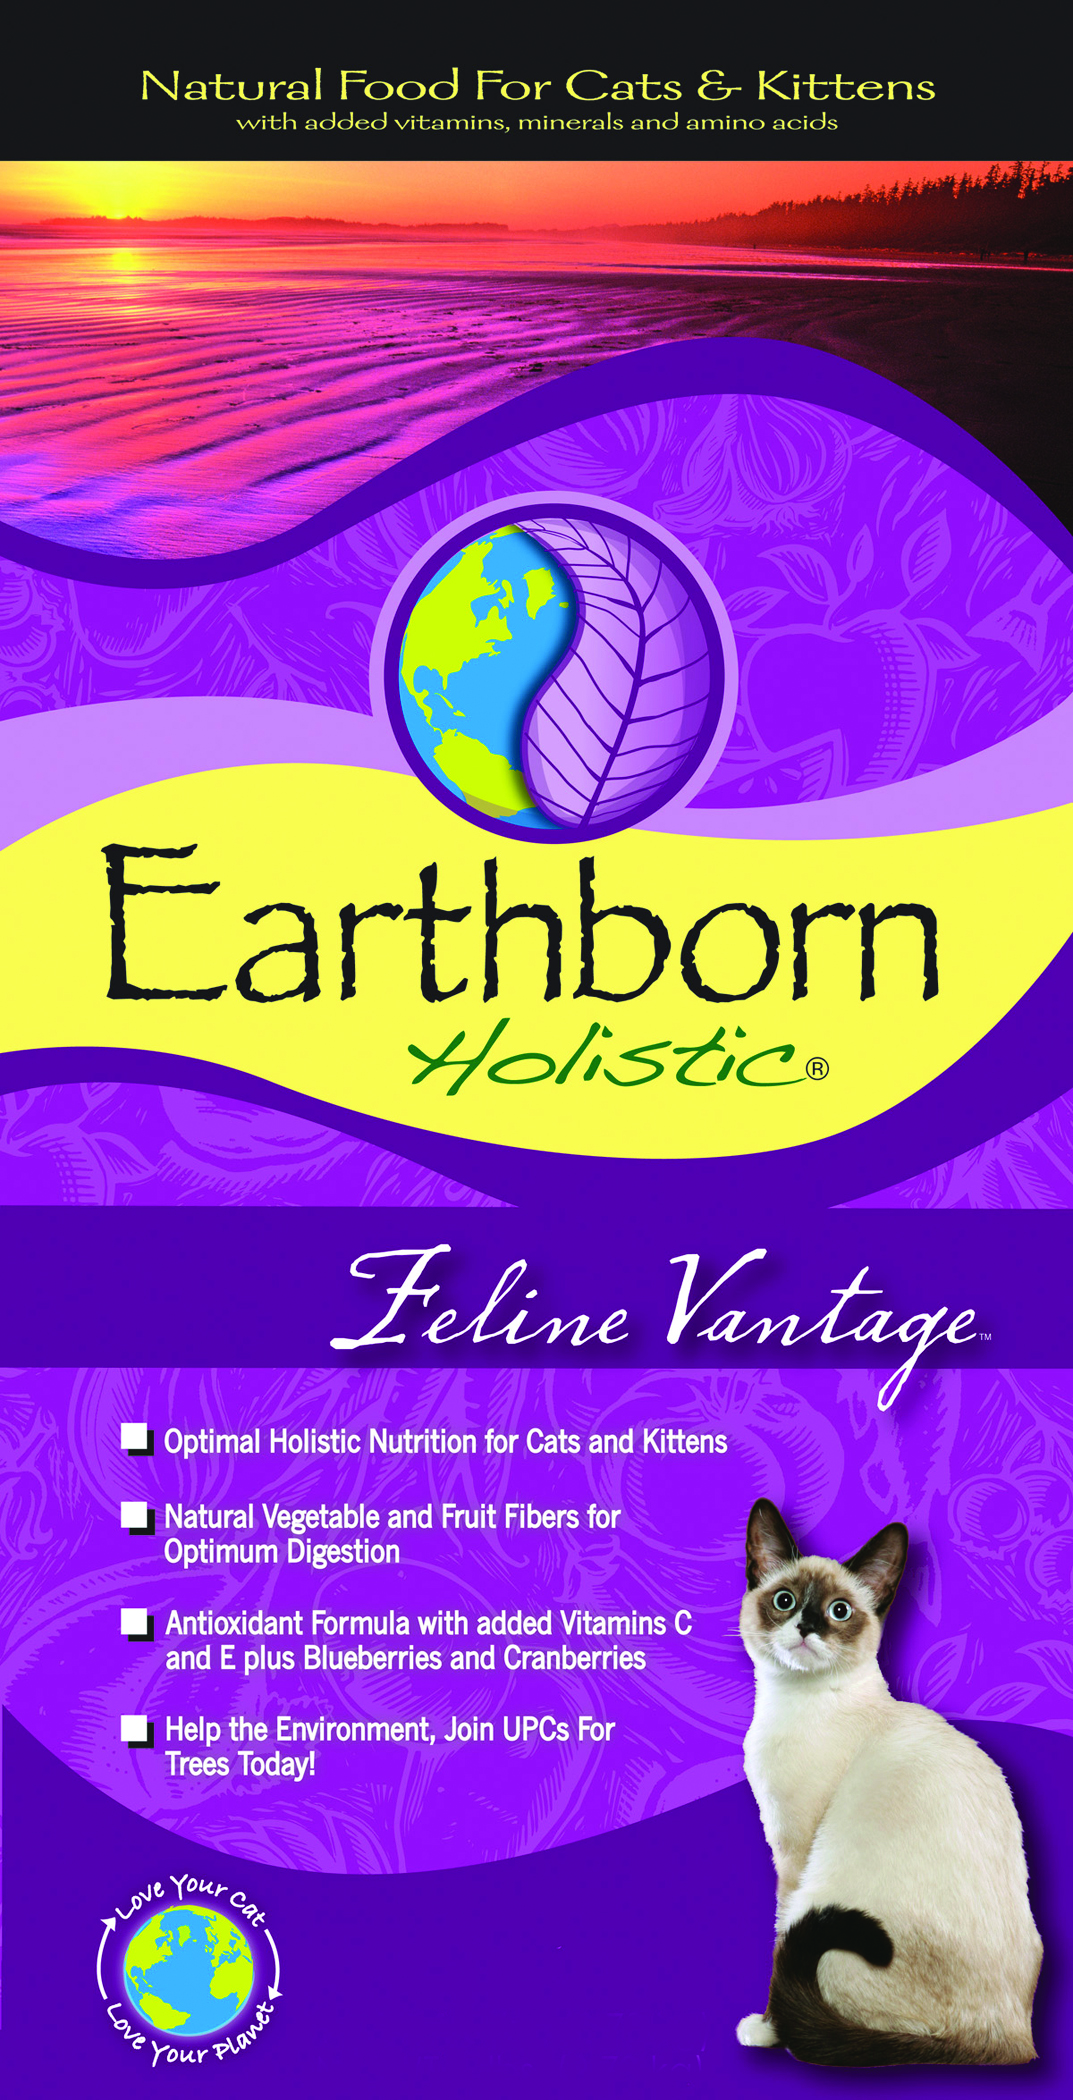 EARTHBORN FELINE VANTAGE